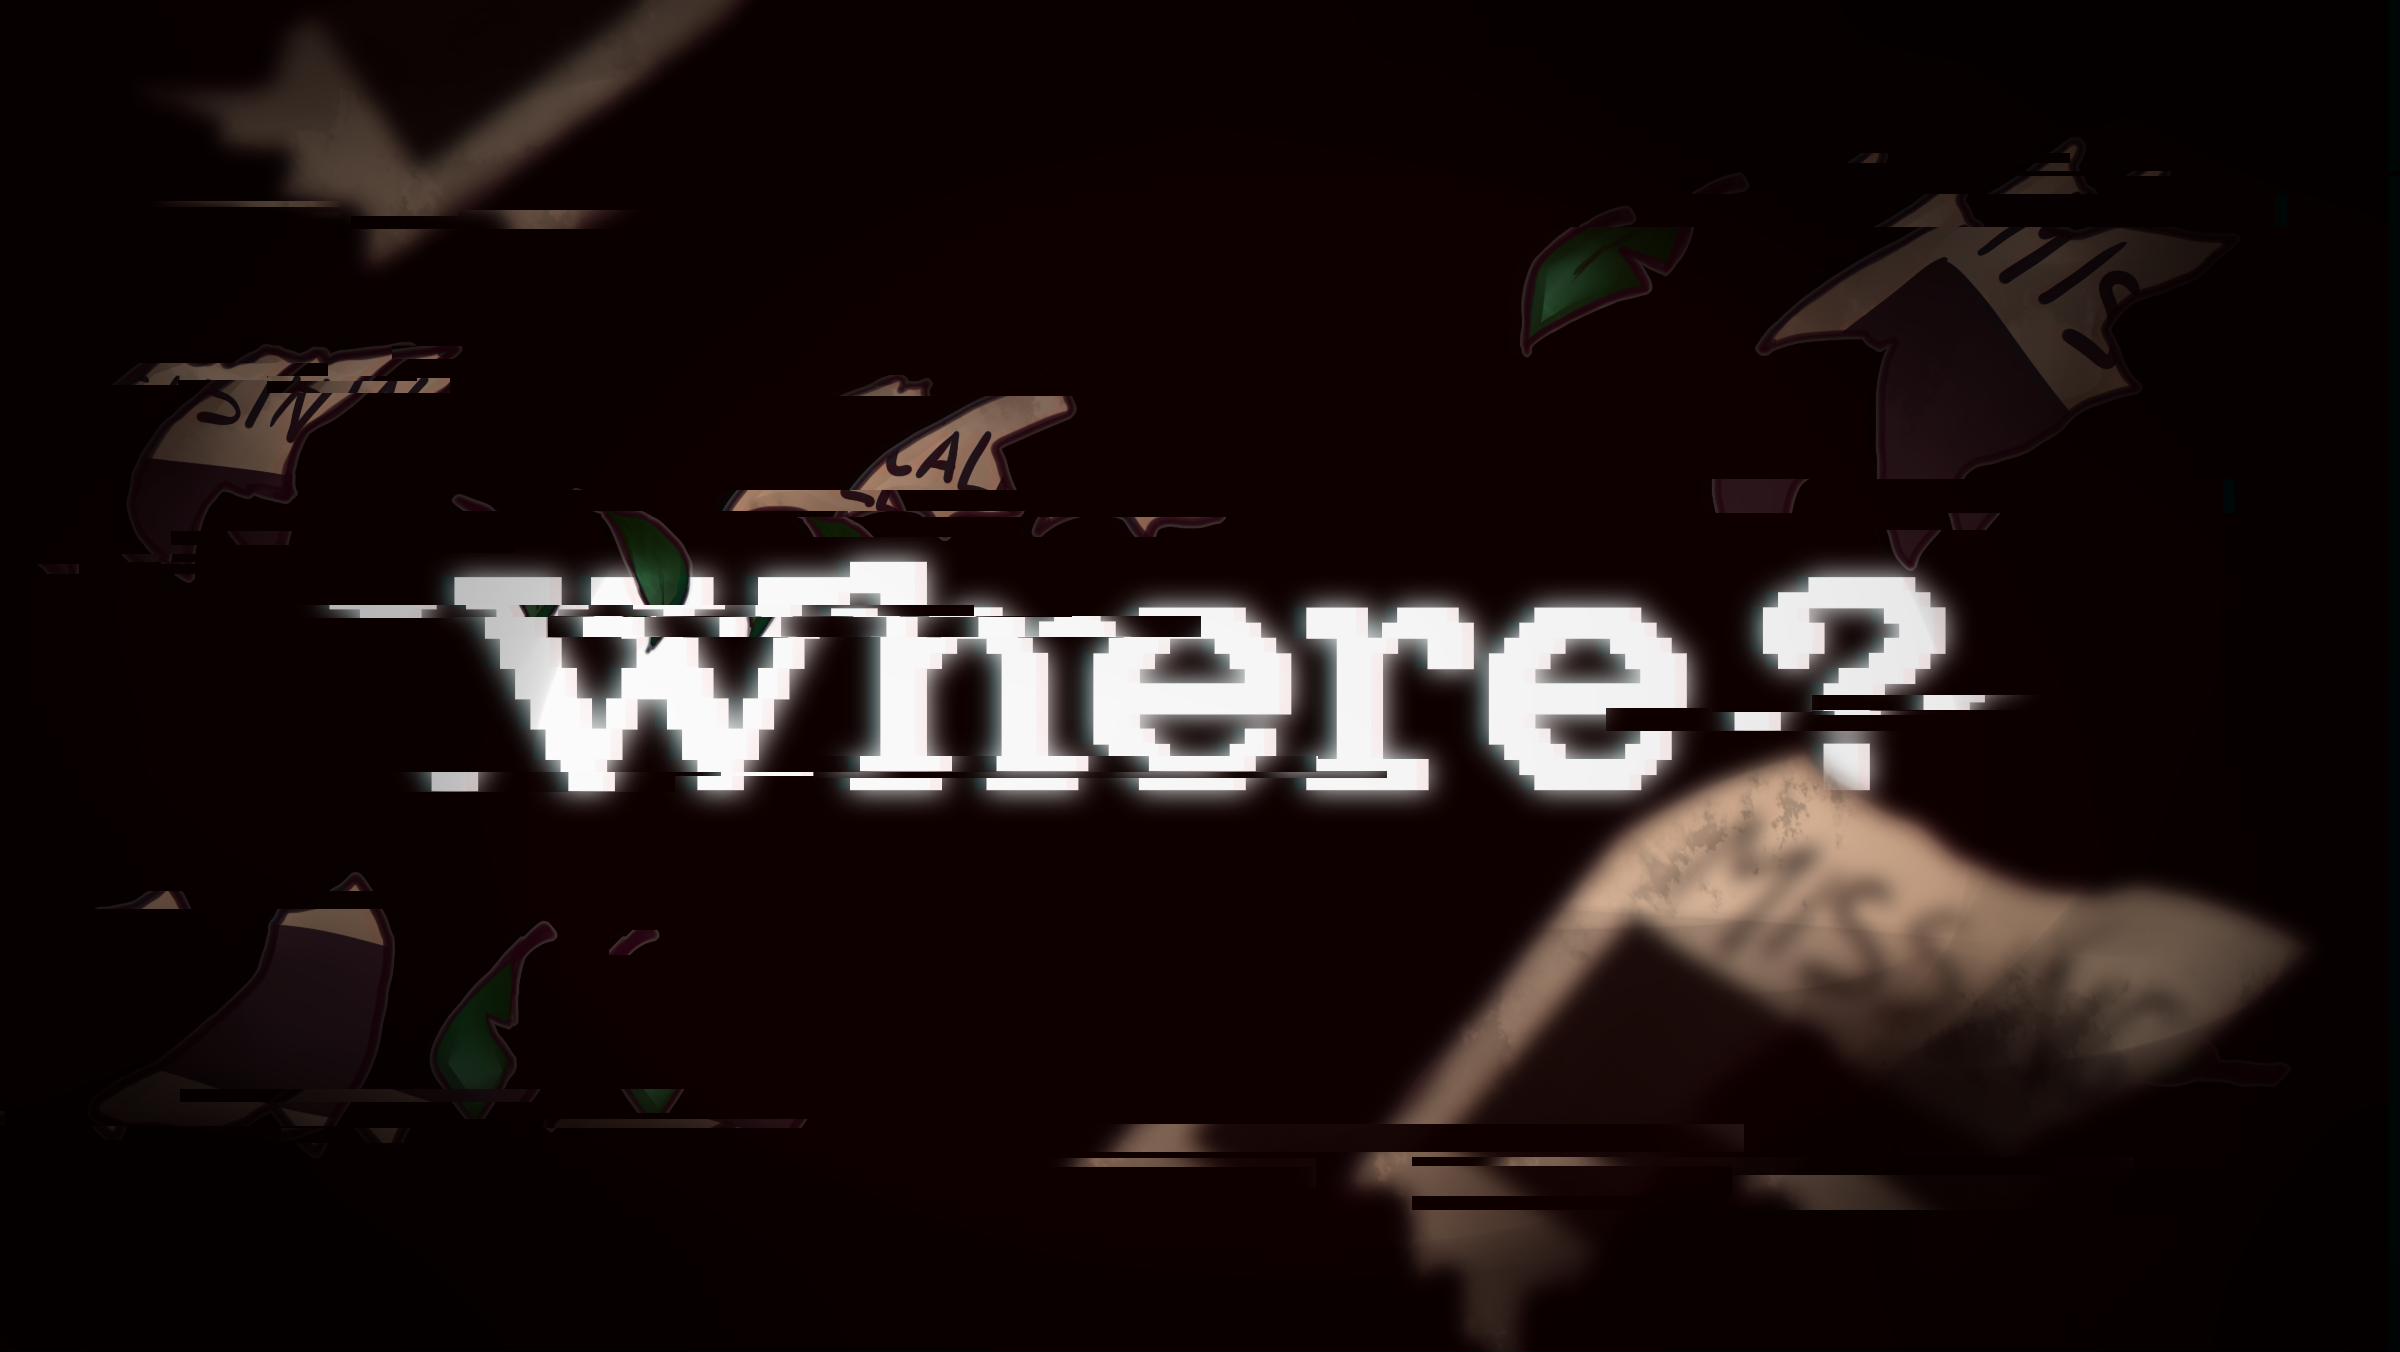 Where ?